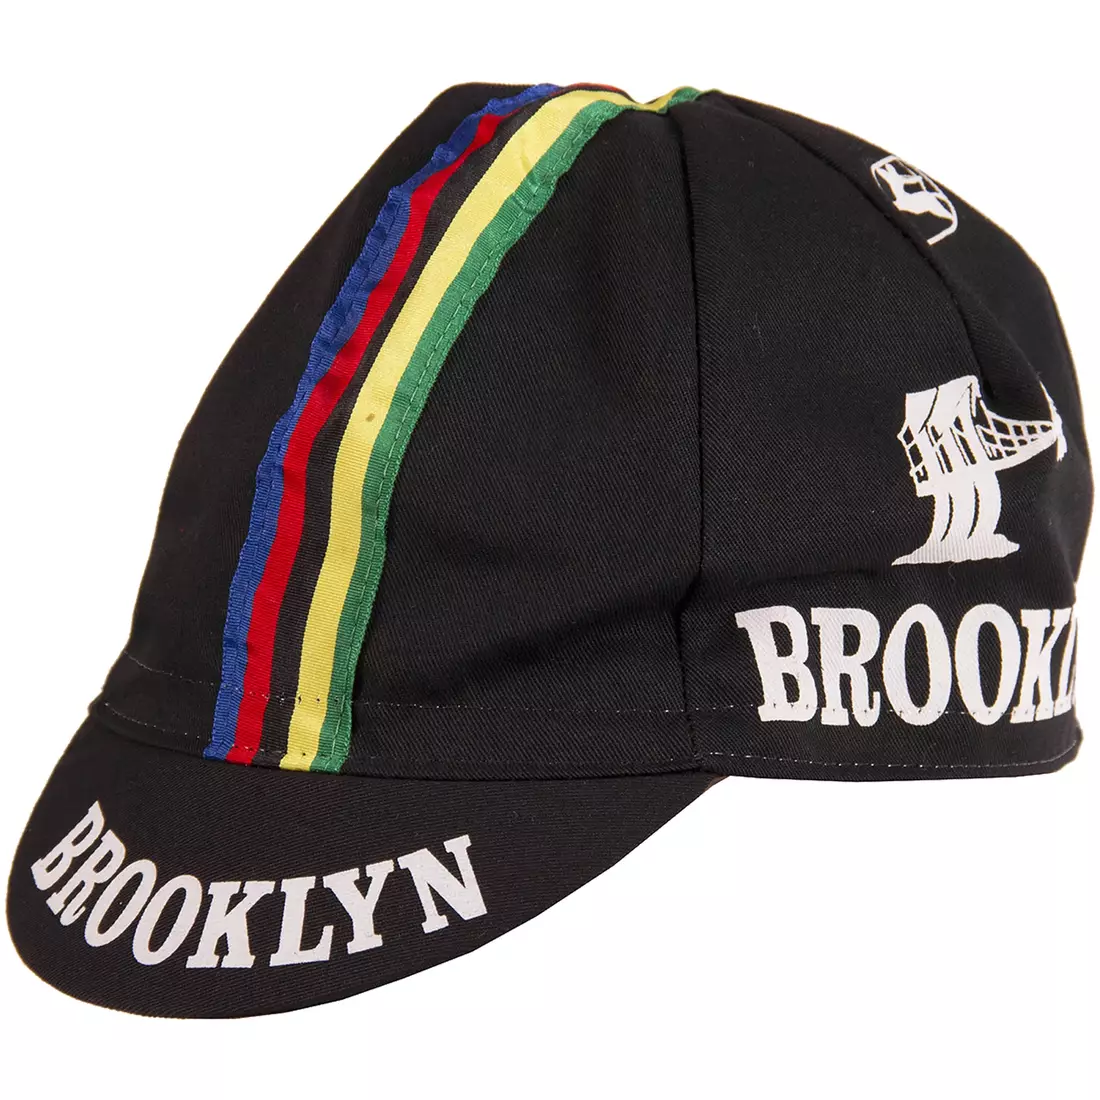 Cyklistická čiapka GIORDANA SS18 - Brooklyn - Čierna s pásikom GI-S6-COCA-BROK-BLCK jedna veľ.